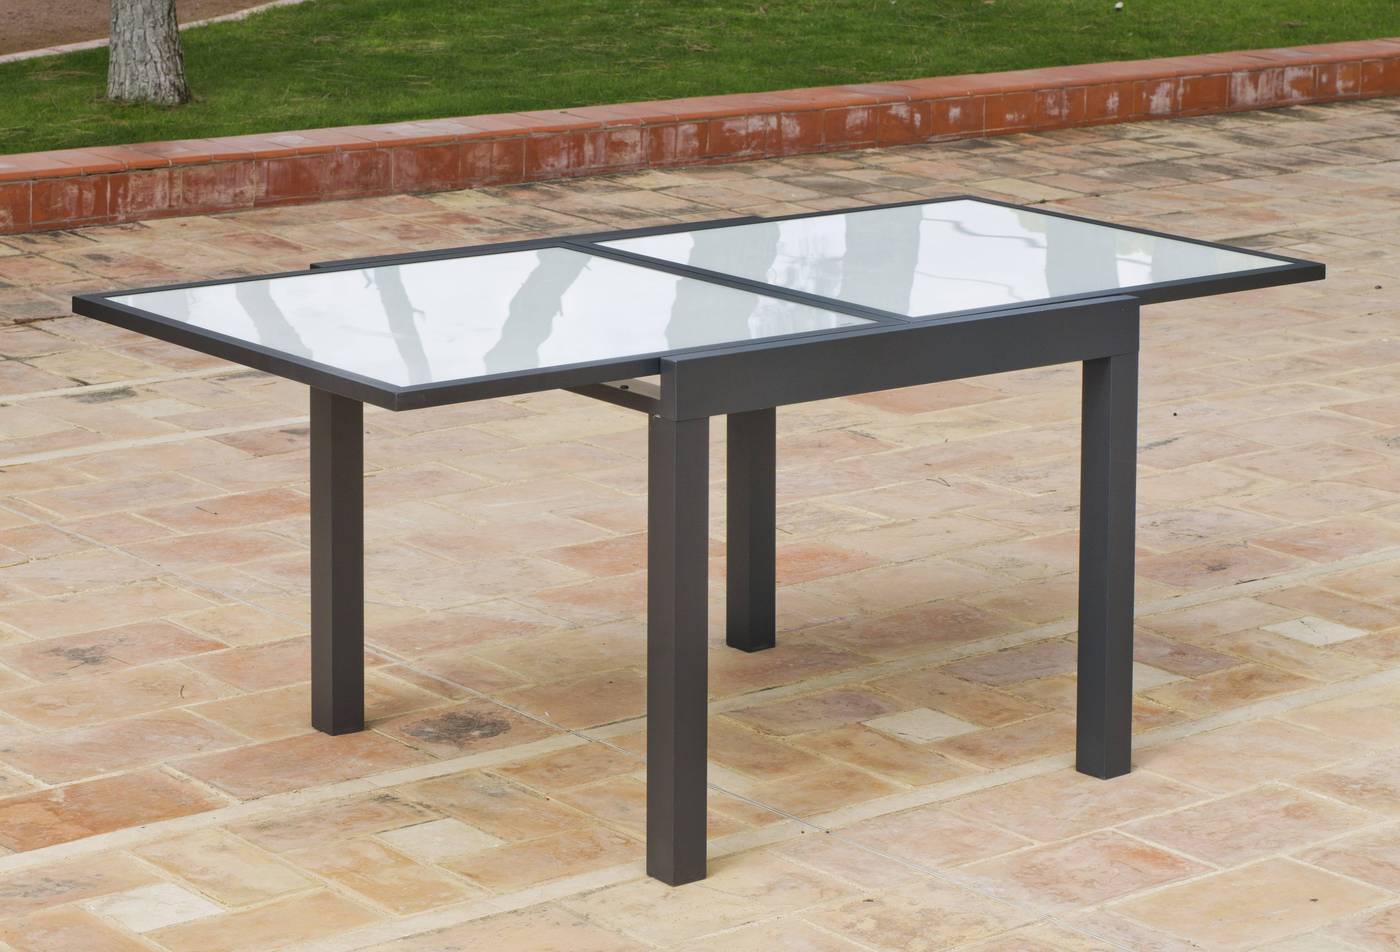 Mesa extensible 90-180 cm, de aluminio color antracita con tablero de cristal templado.